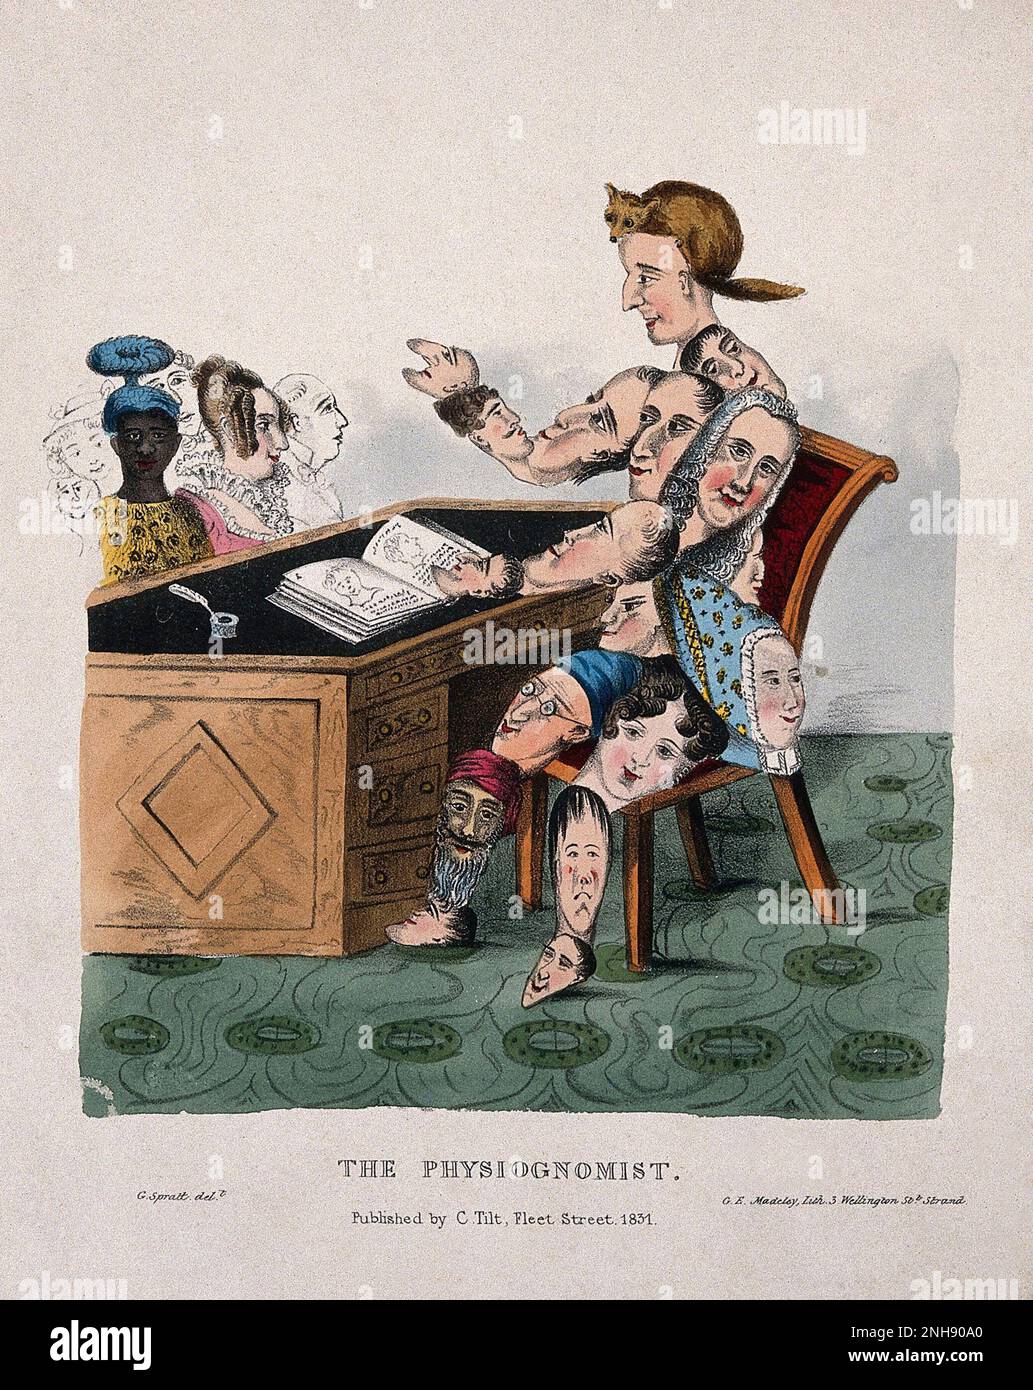 Ein Physiognomist, dessen Körper komplett aus Gesichtern besteht, sitzt an einem Tisch und diagnostiziert die physiognomischen Eigenschaften der Menschen mit Hilfe eines Buches. Farbige Lithographie von G.E. Madeley nach George Spratt, 1831. Stockfoto